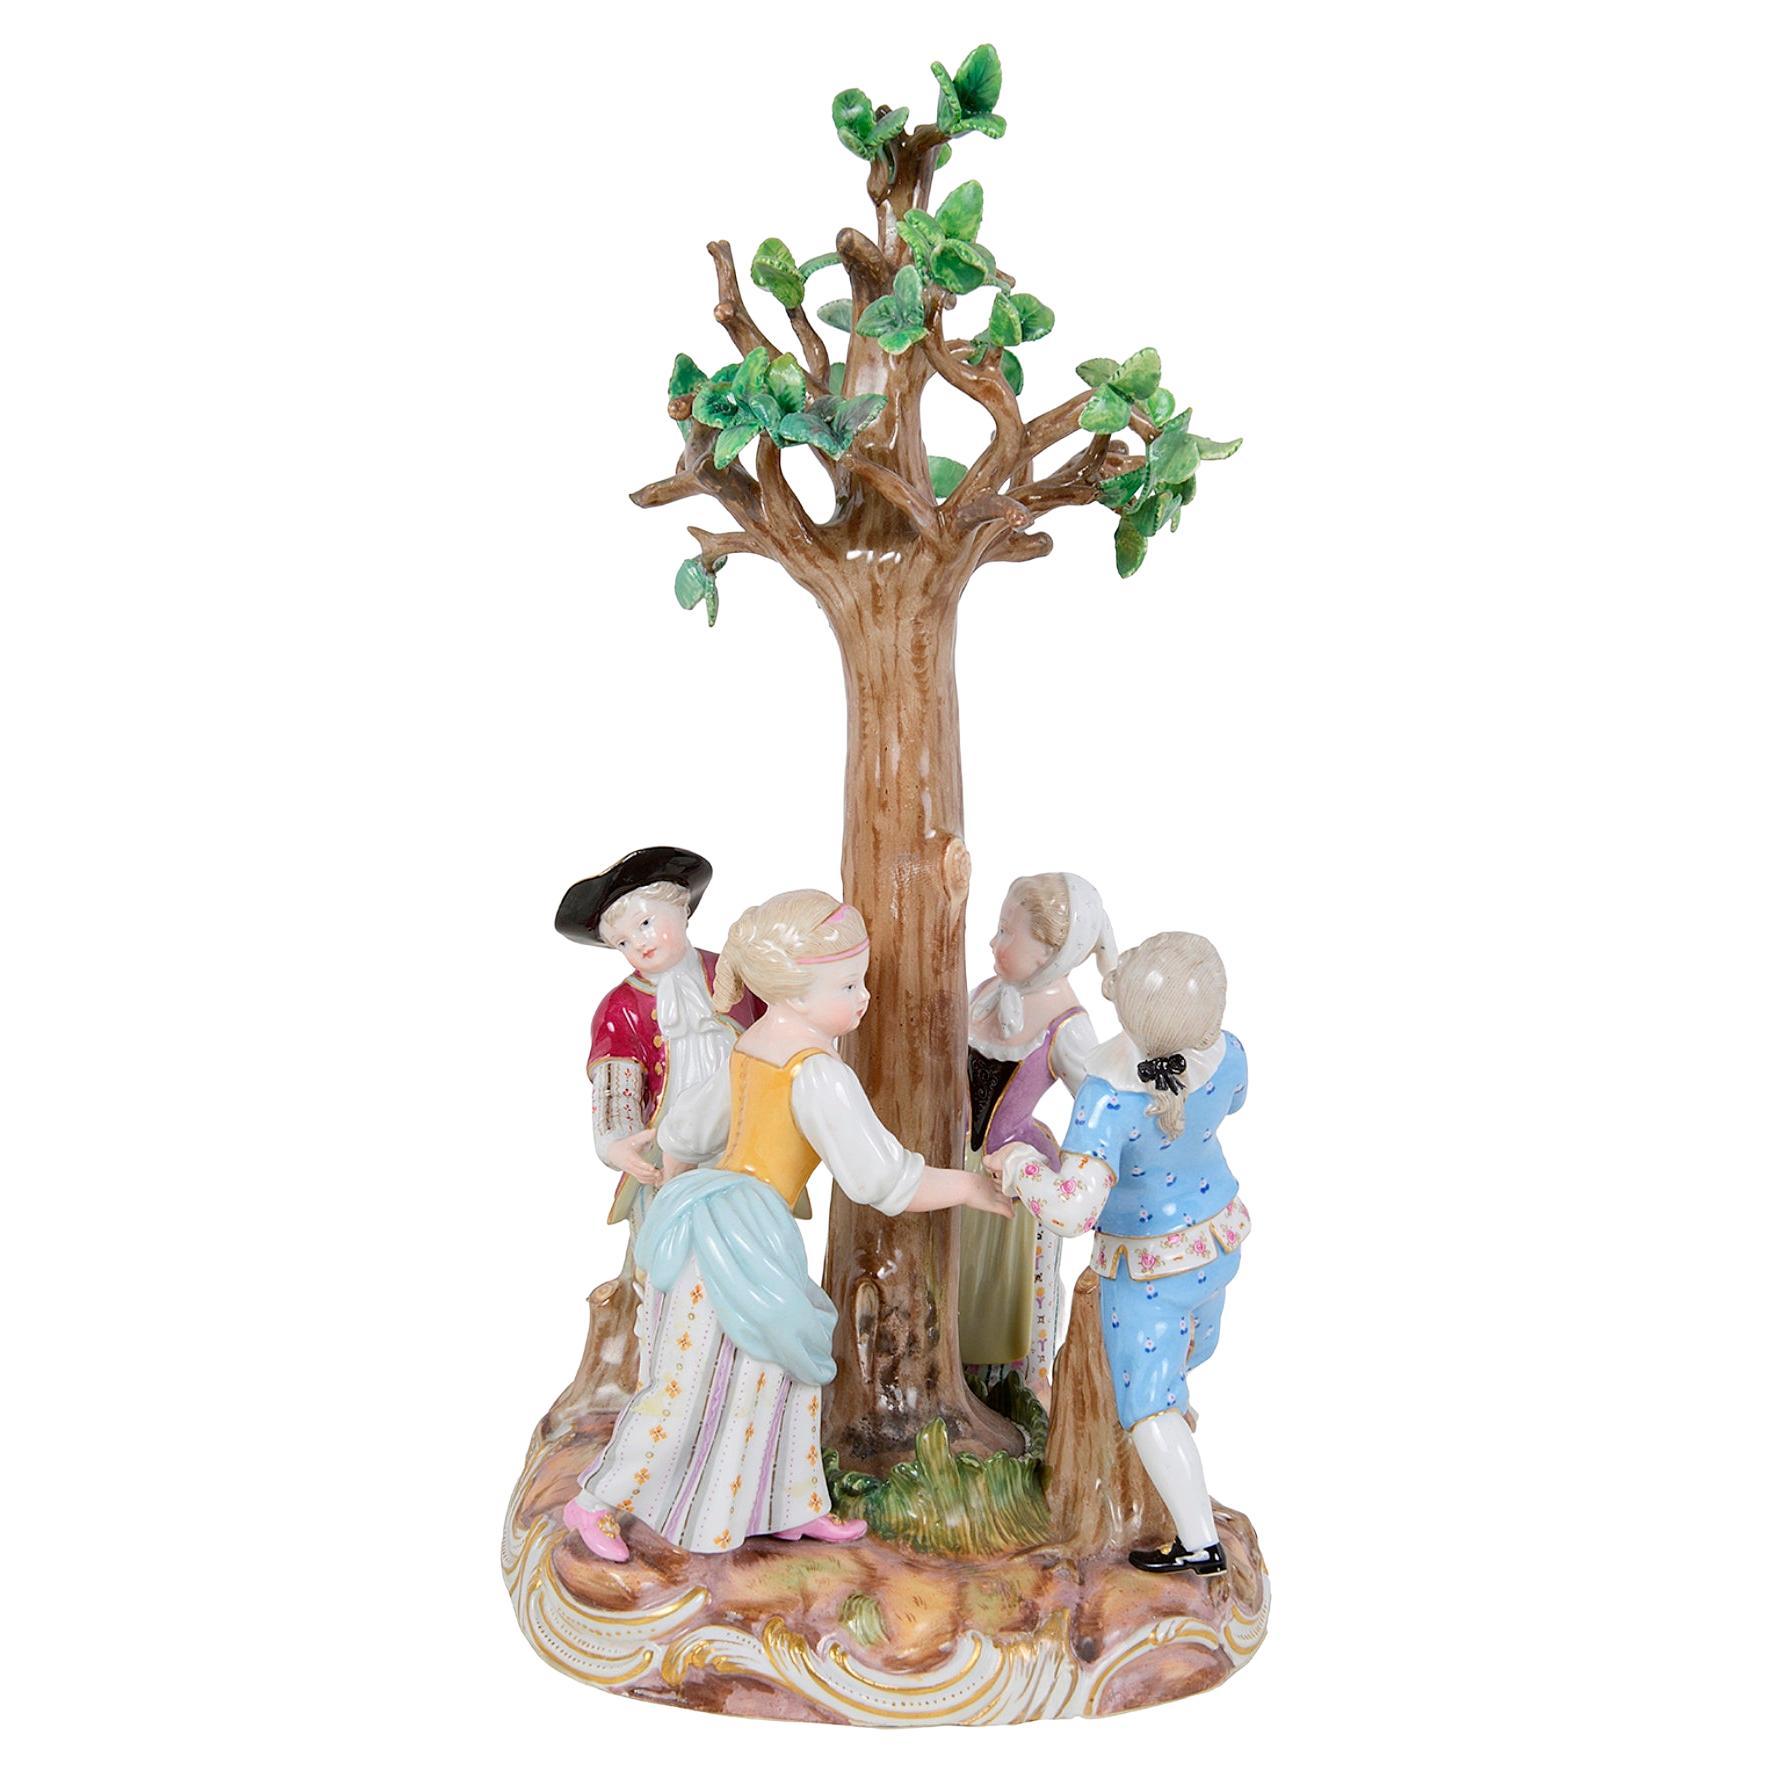 Figurines de Meissen - Enfants de garde dansant autour d'un arbre, XIXe siècle